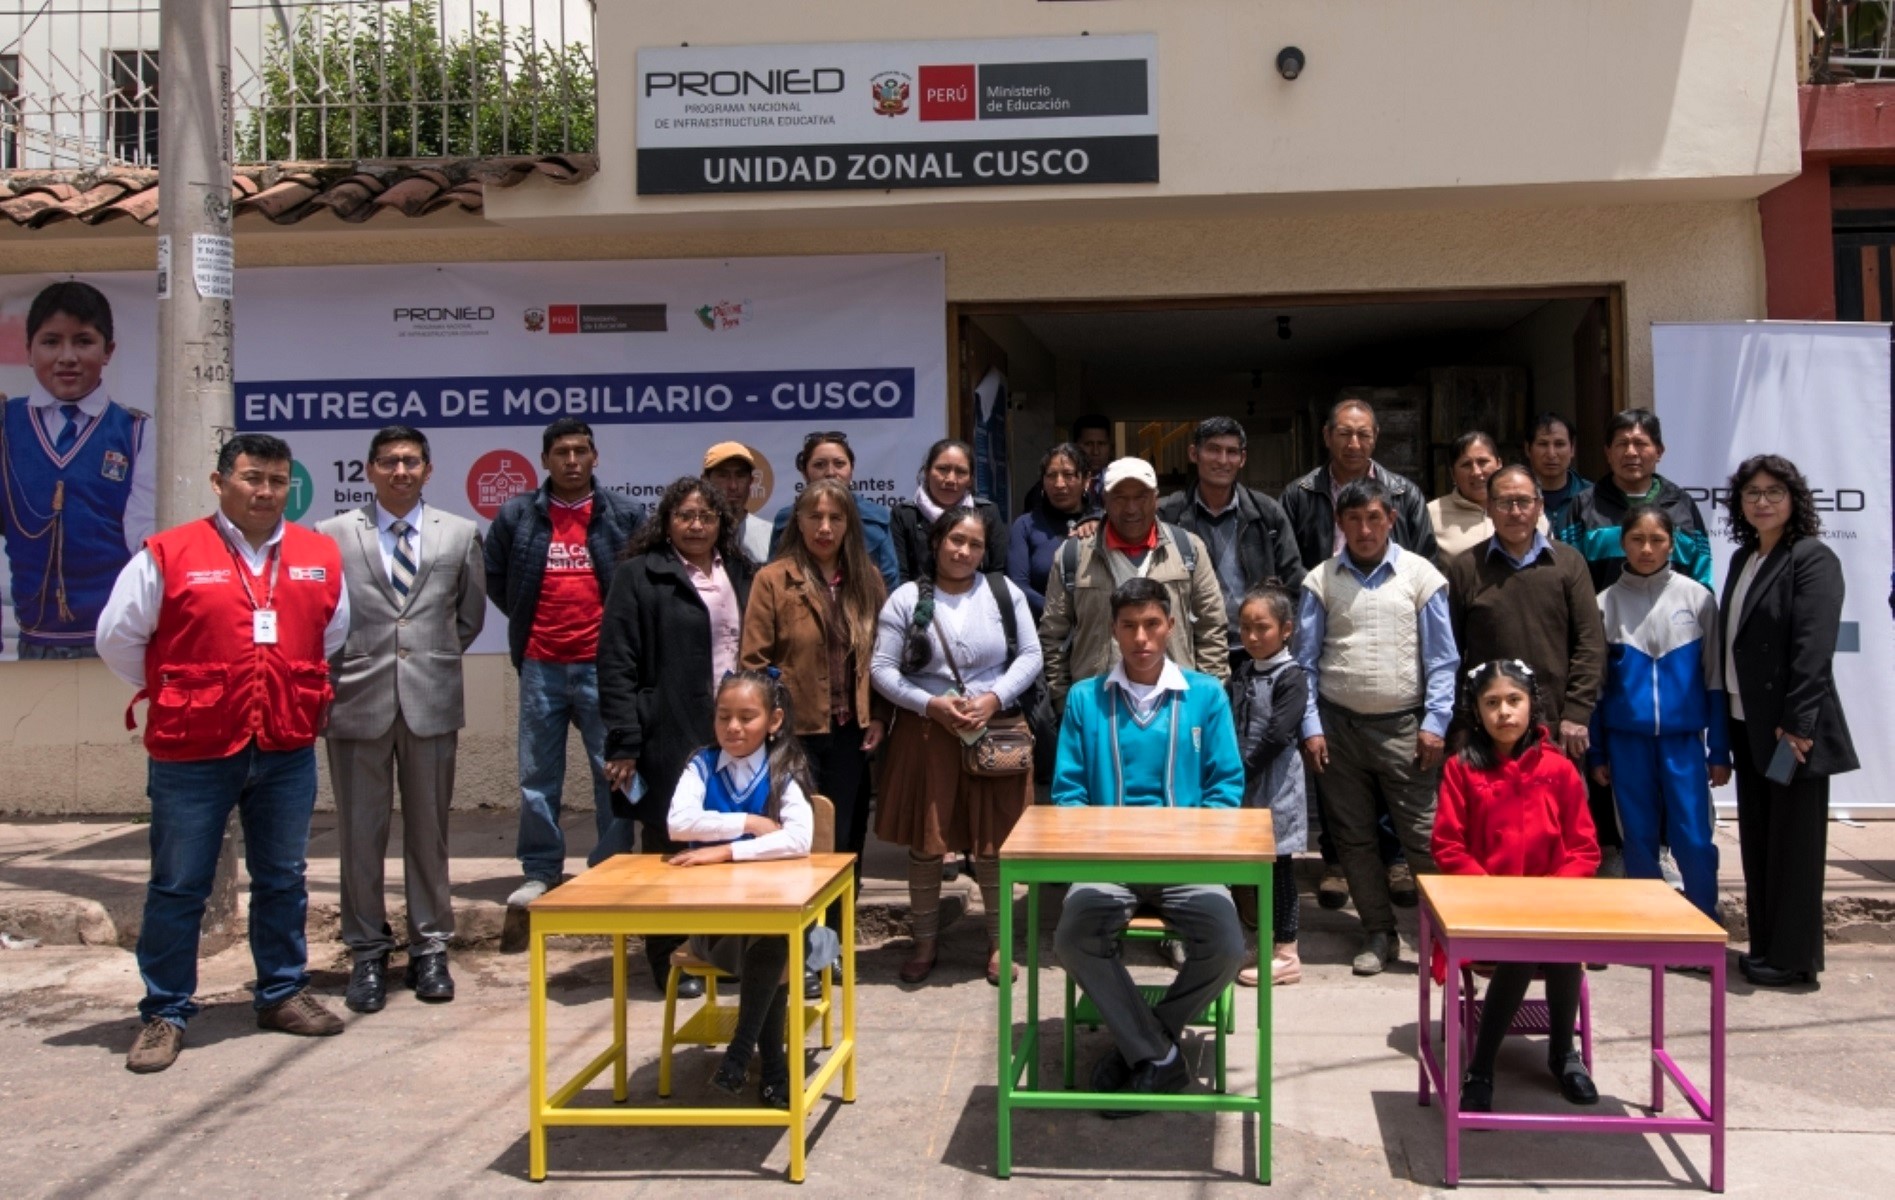 Minedu a través del Pronied, gestionó la entrega de mobiliario escolar donado por la Iglesia de Jesucristo para colegios de Cusco.